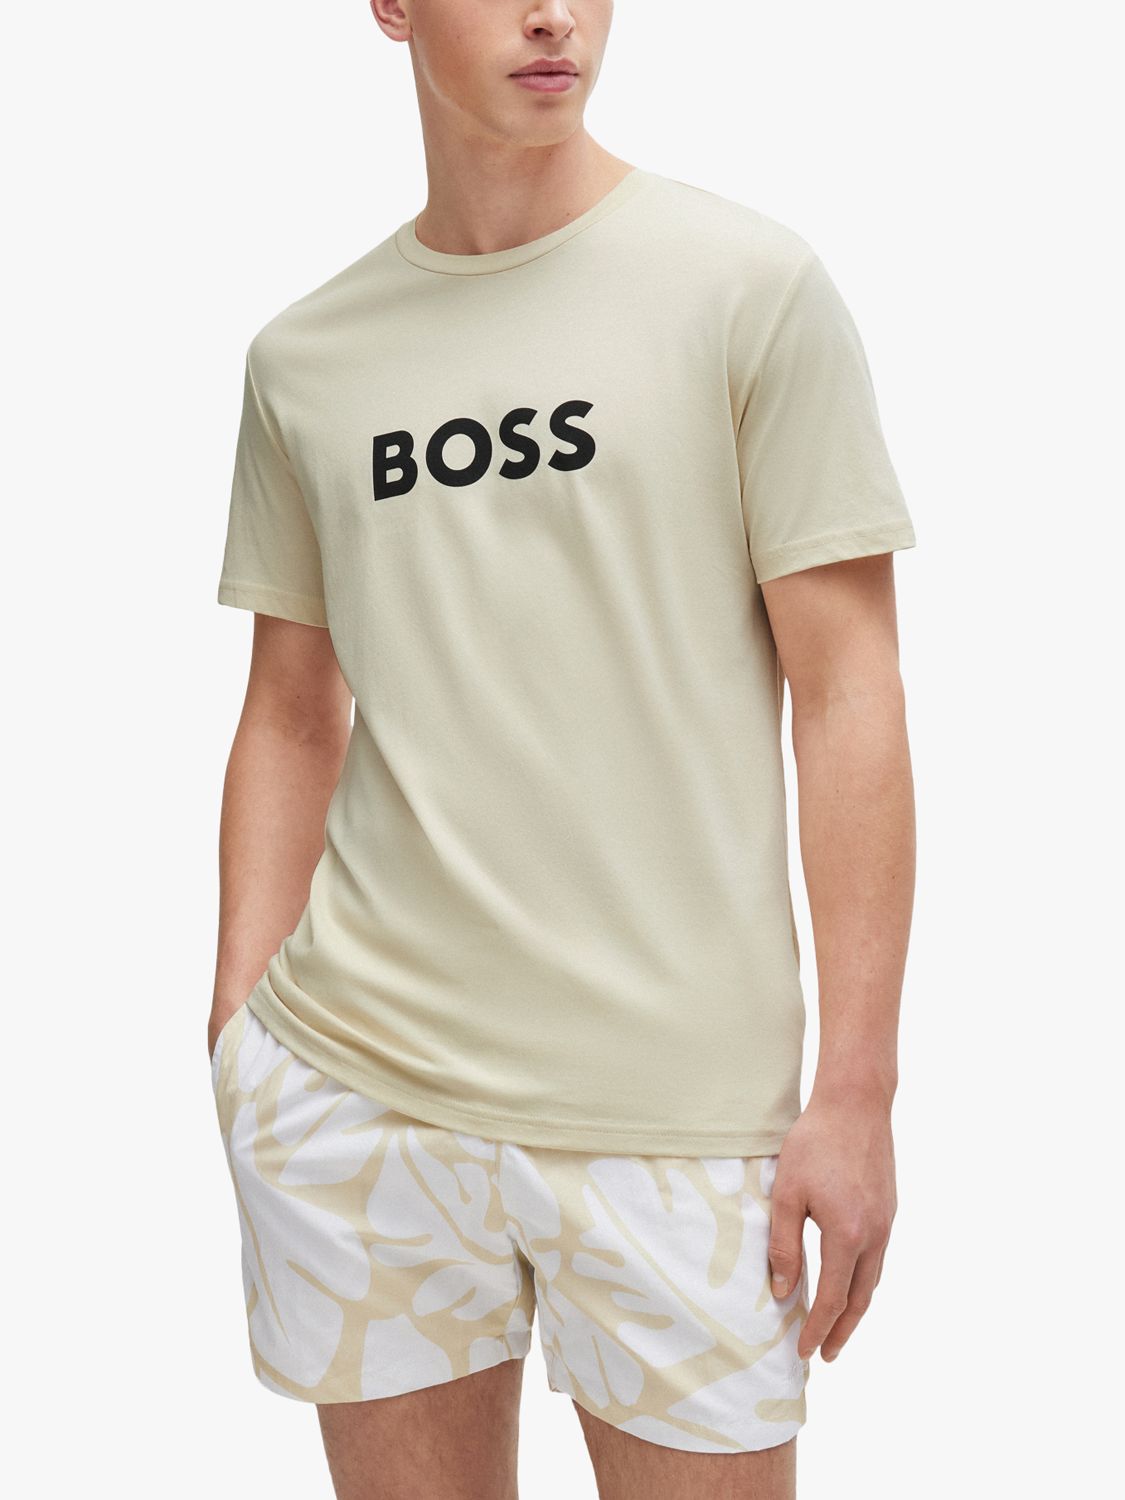 BOSS Regular Fit Logo T-Shirt, White, M